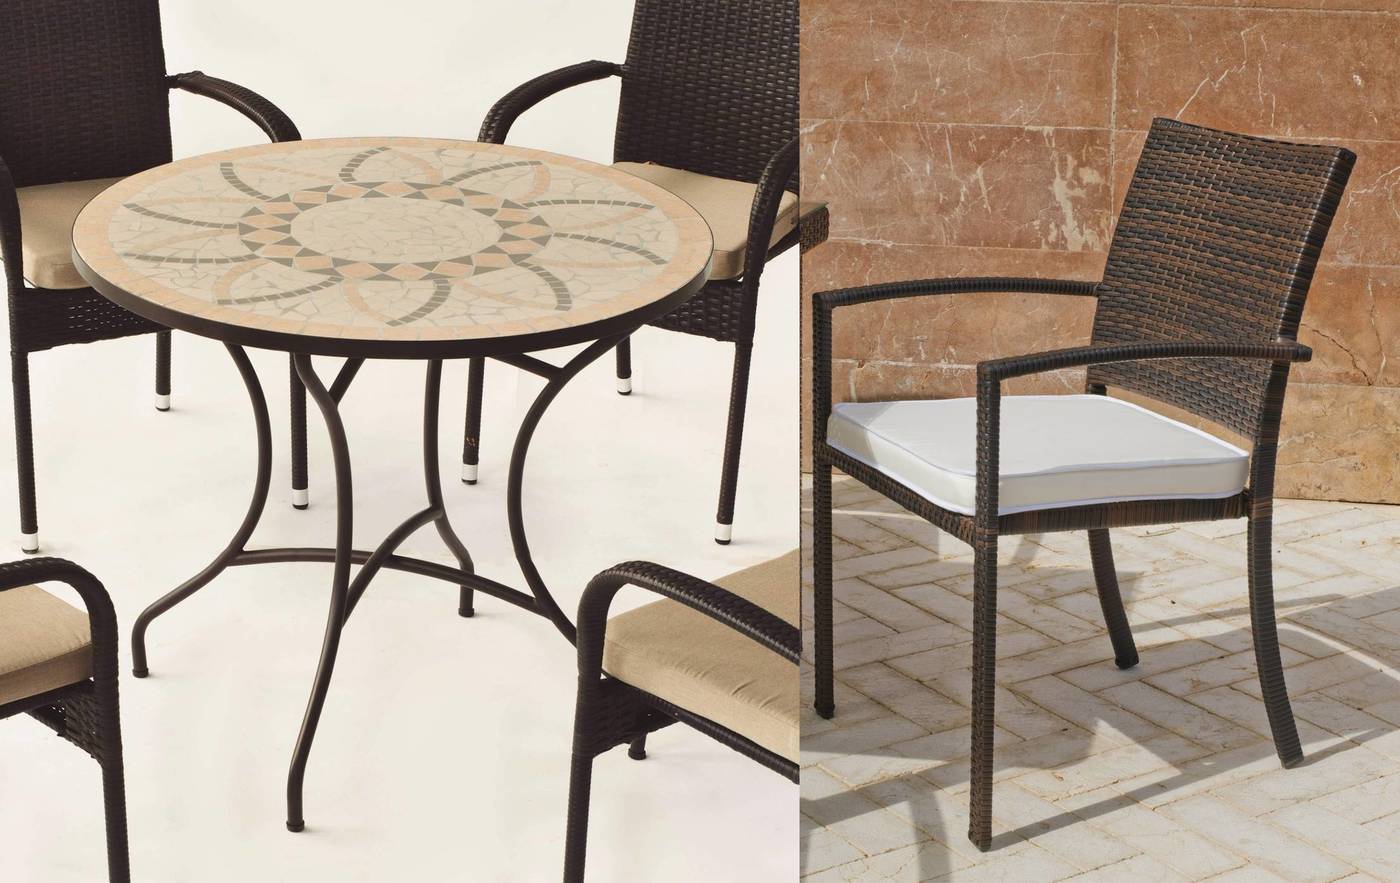 Conjunto de forja color marrón: mesa con tablero mosaico de 90 cm + 4 sillones de ratán sintético con cojines.